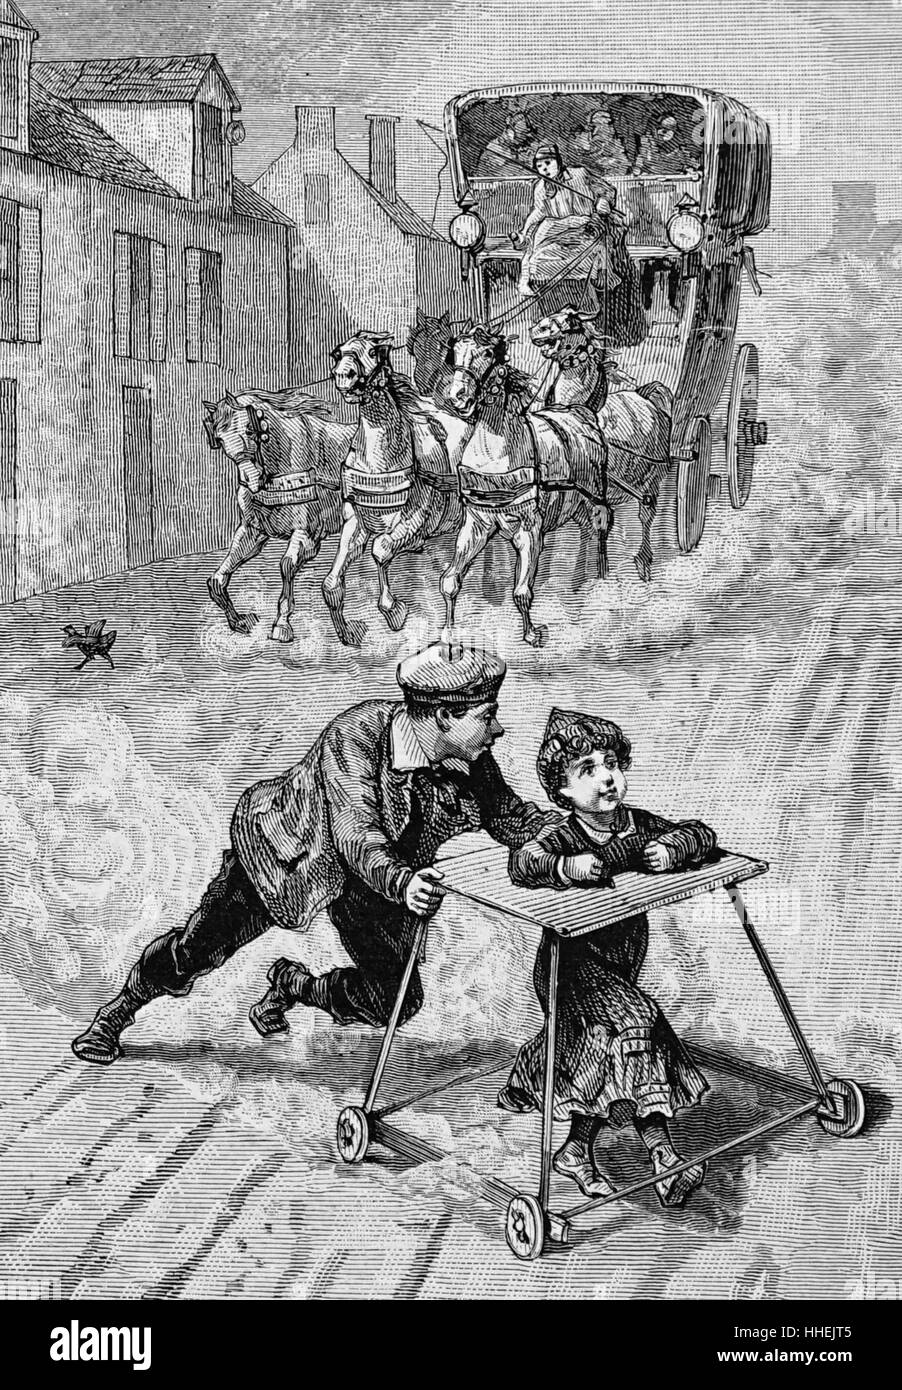 Illustration représentant un frère aîné en poussant son jeune frère, dans un cadre de marche, de la voie d'un transport qui a quitté vers eux. En date du 19e siècle Banque D'Images